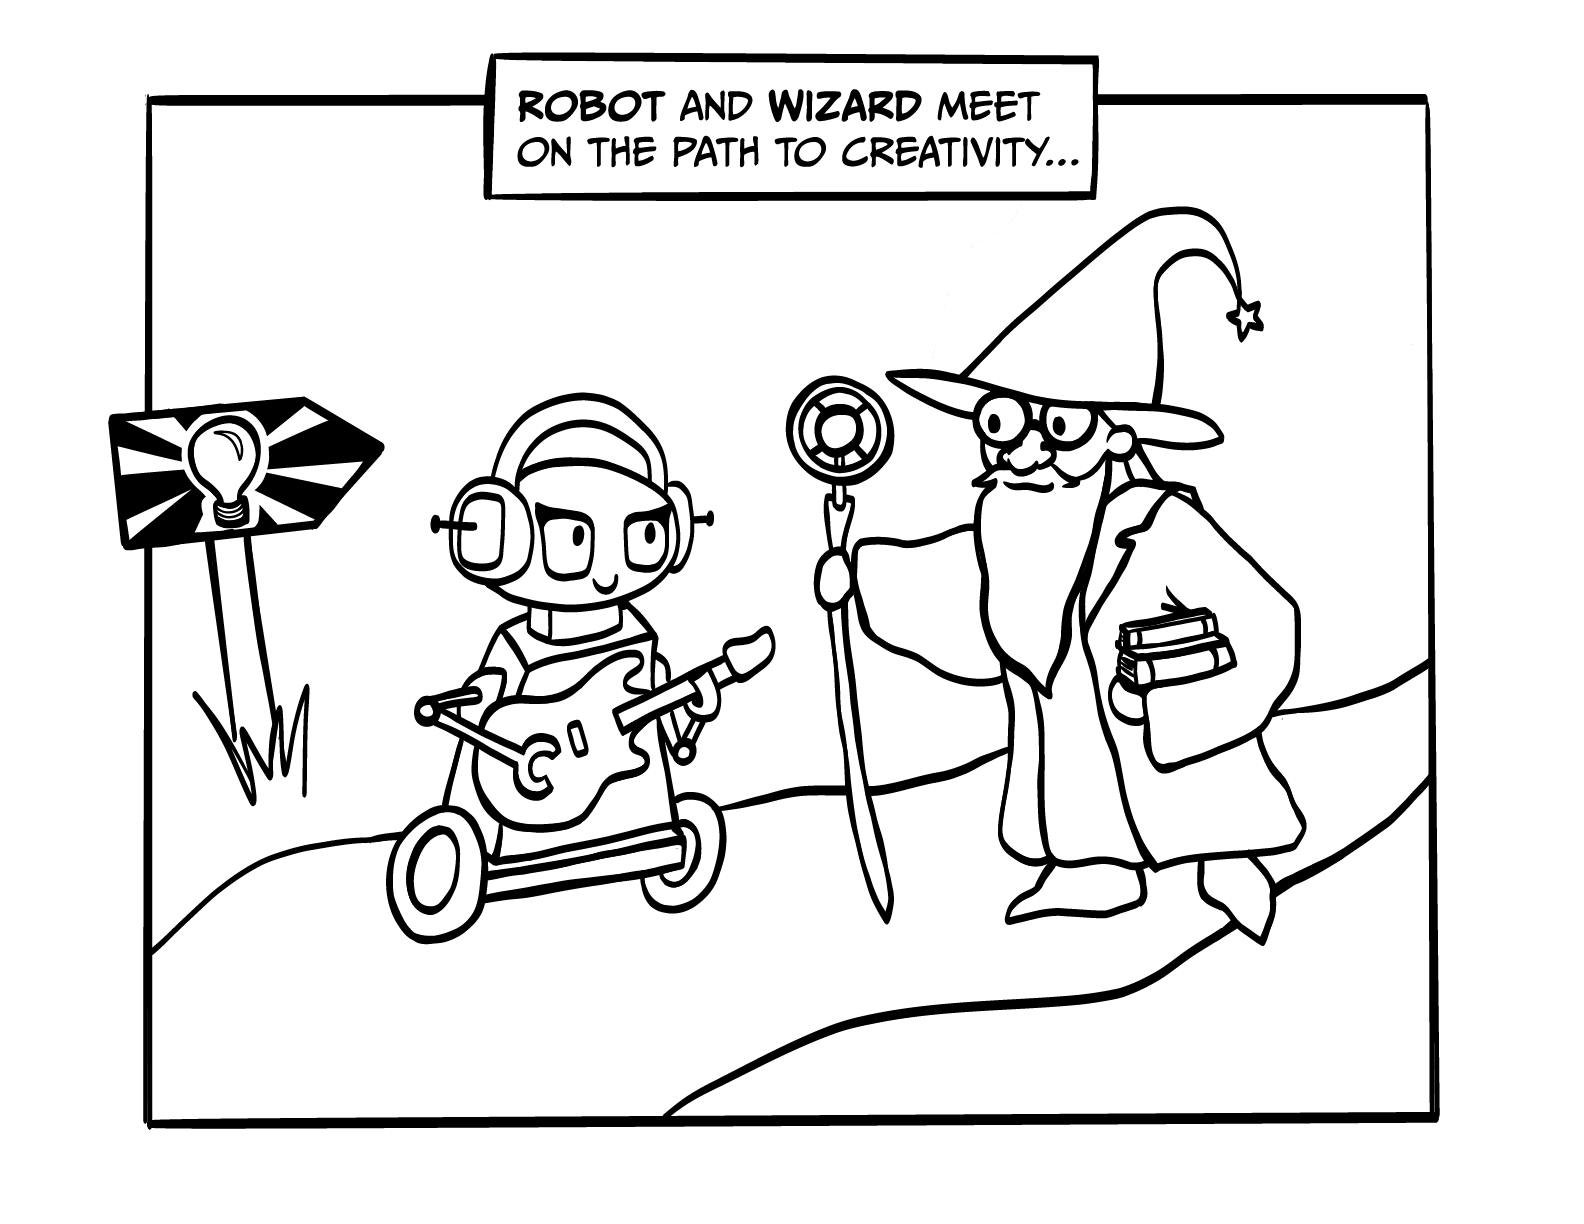 Robot & Wizard begin their creative journey.